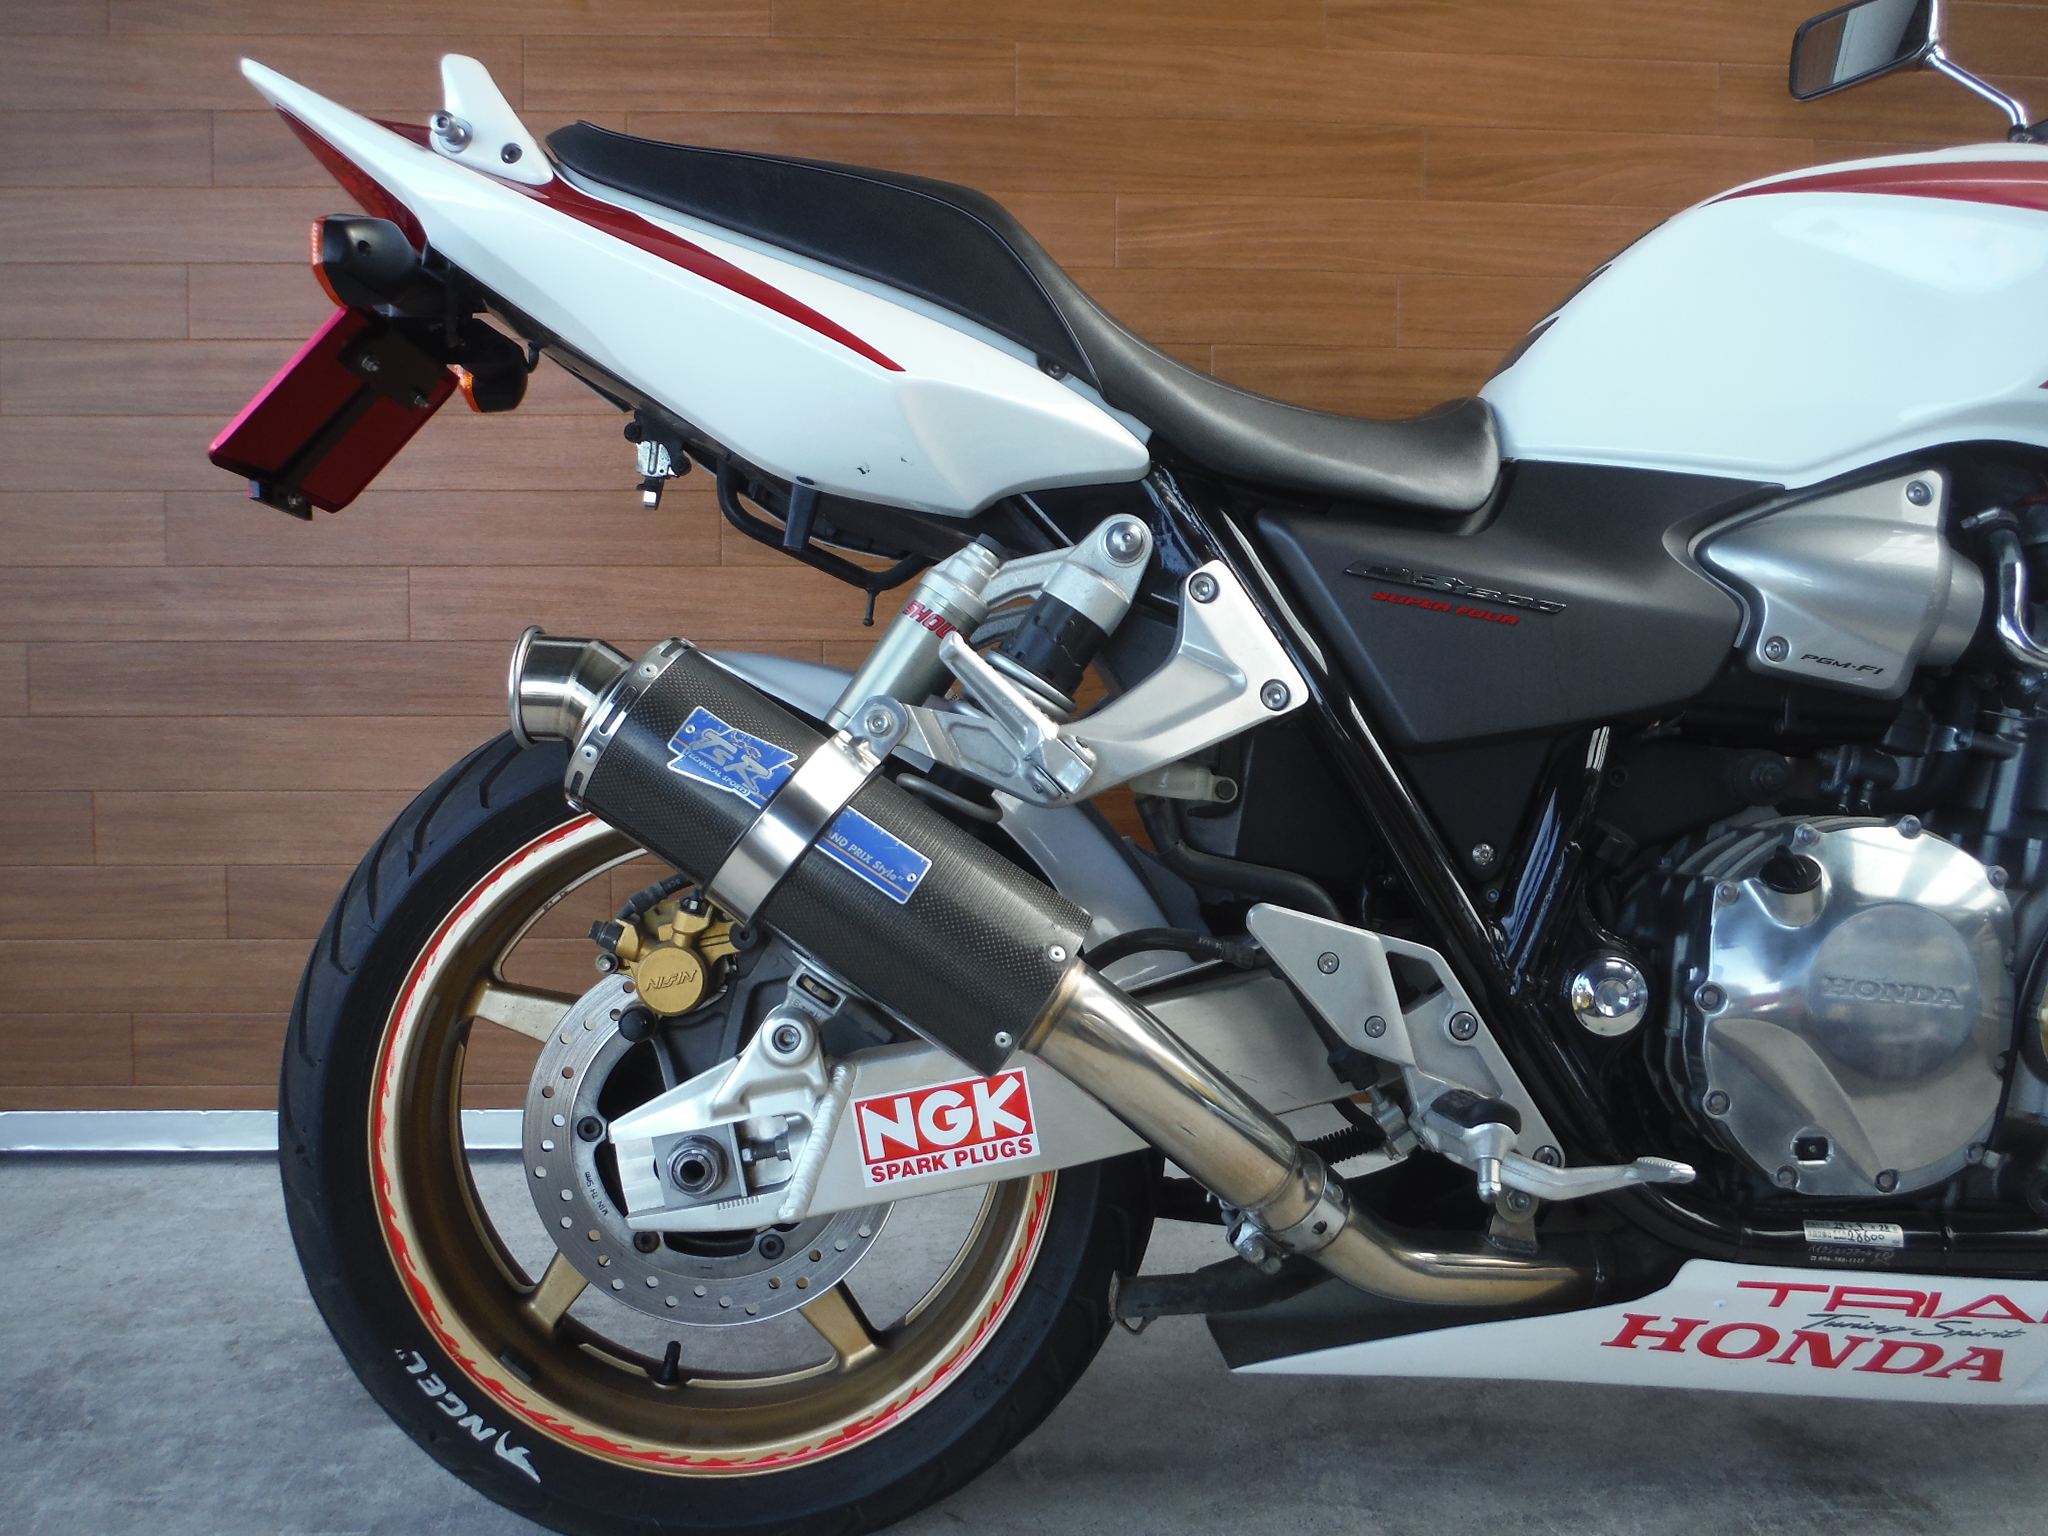 熊本中古車バイク情報 ホンダ Cb1300sf 1300 04年モデル 赤白 熊本のバイクショップ アール バイクの新車 中古車 販売や買取 レンタルバイクのことならおまかせください